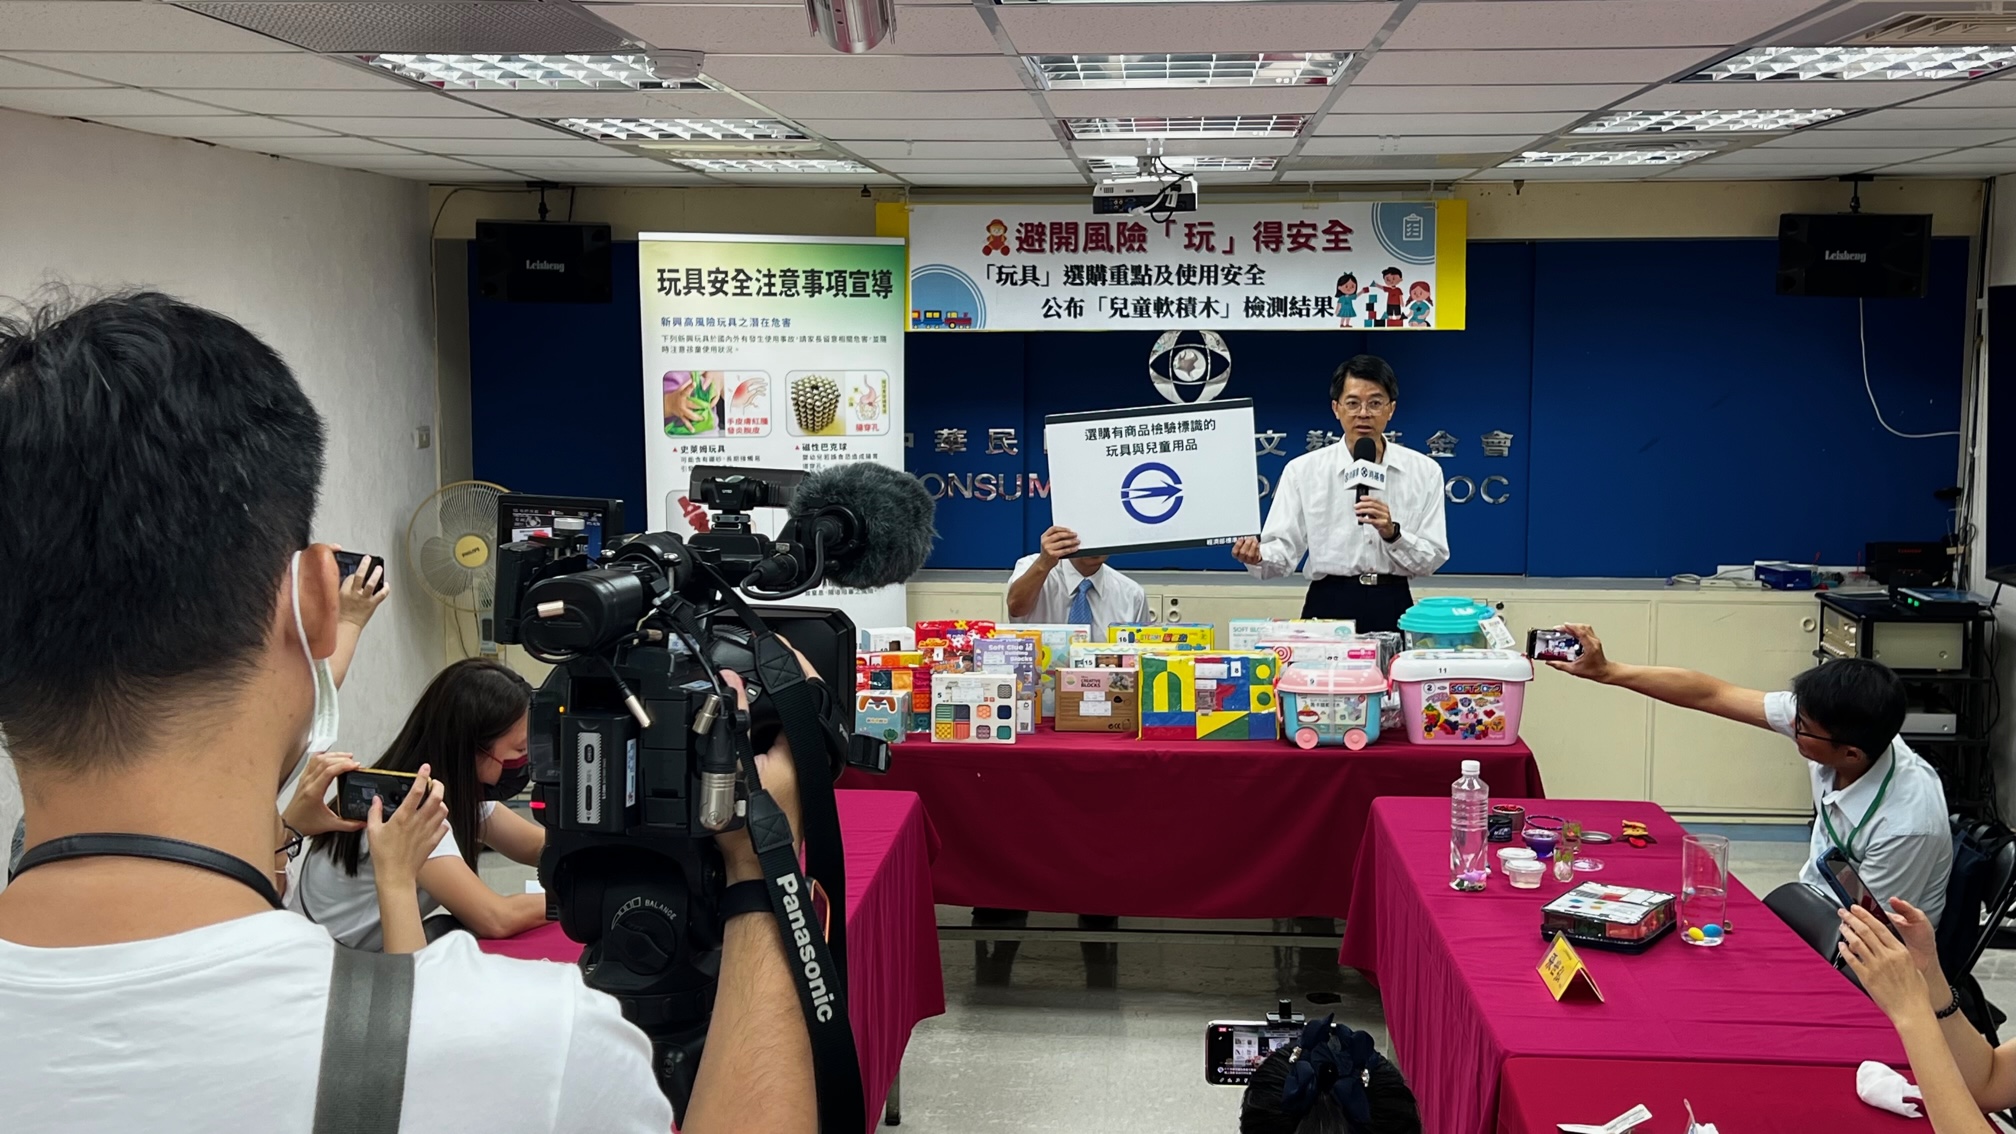 保障兒童「玩」的安全  經濟部標準檢驗局與財團法人中華民國消費者文教基金會合作共同宣導「玩具」選購重點及使用安全